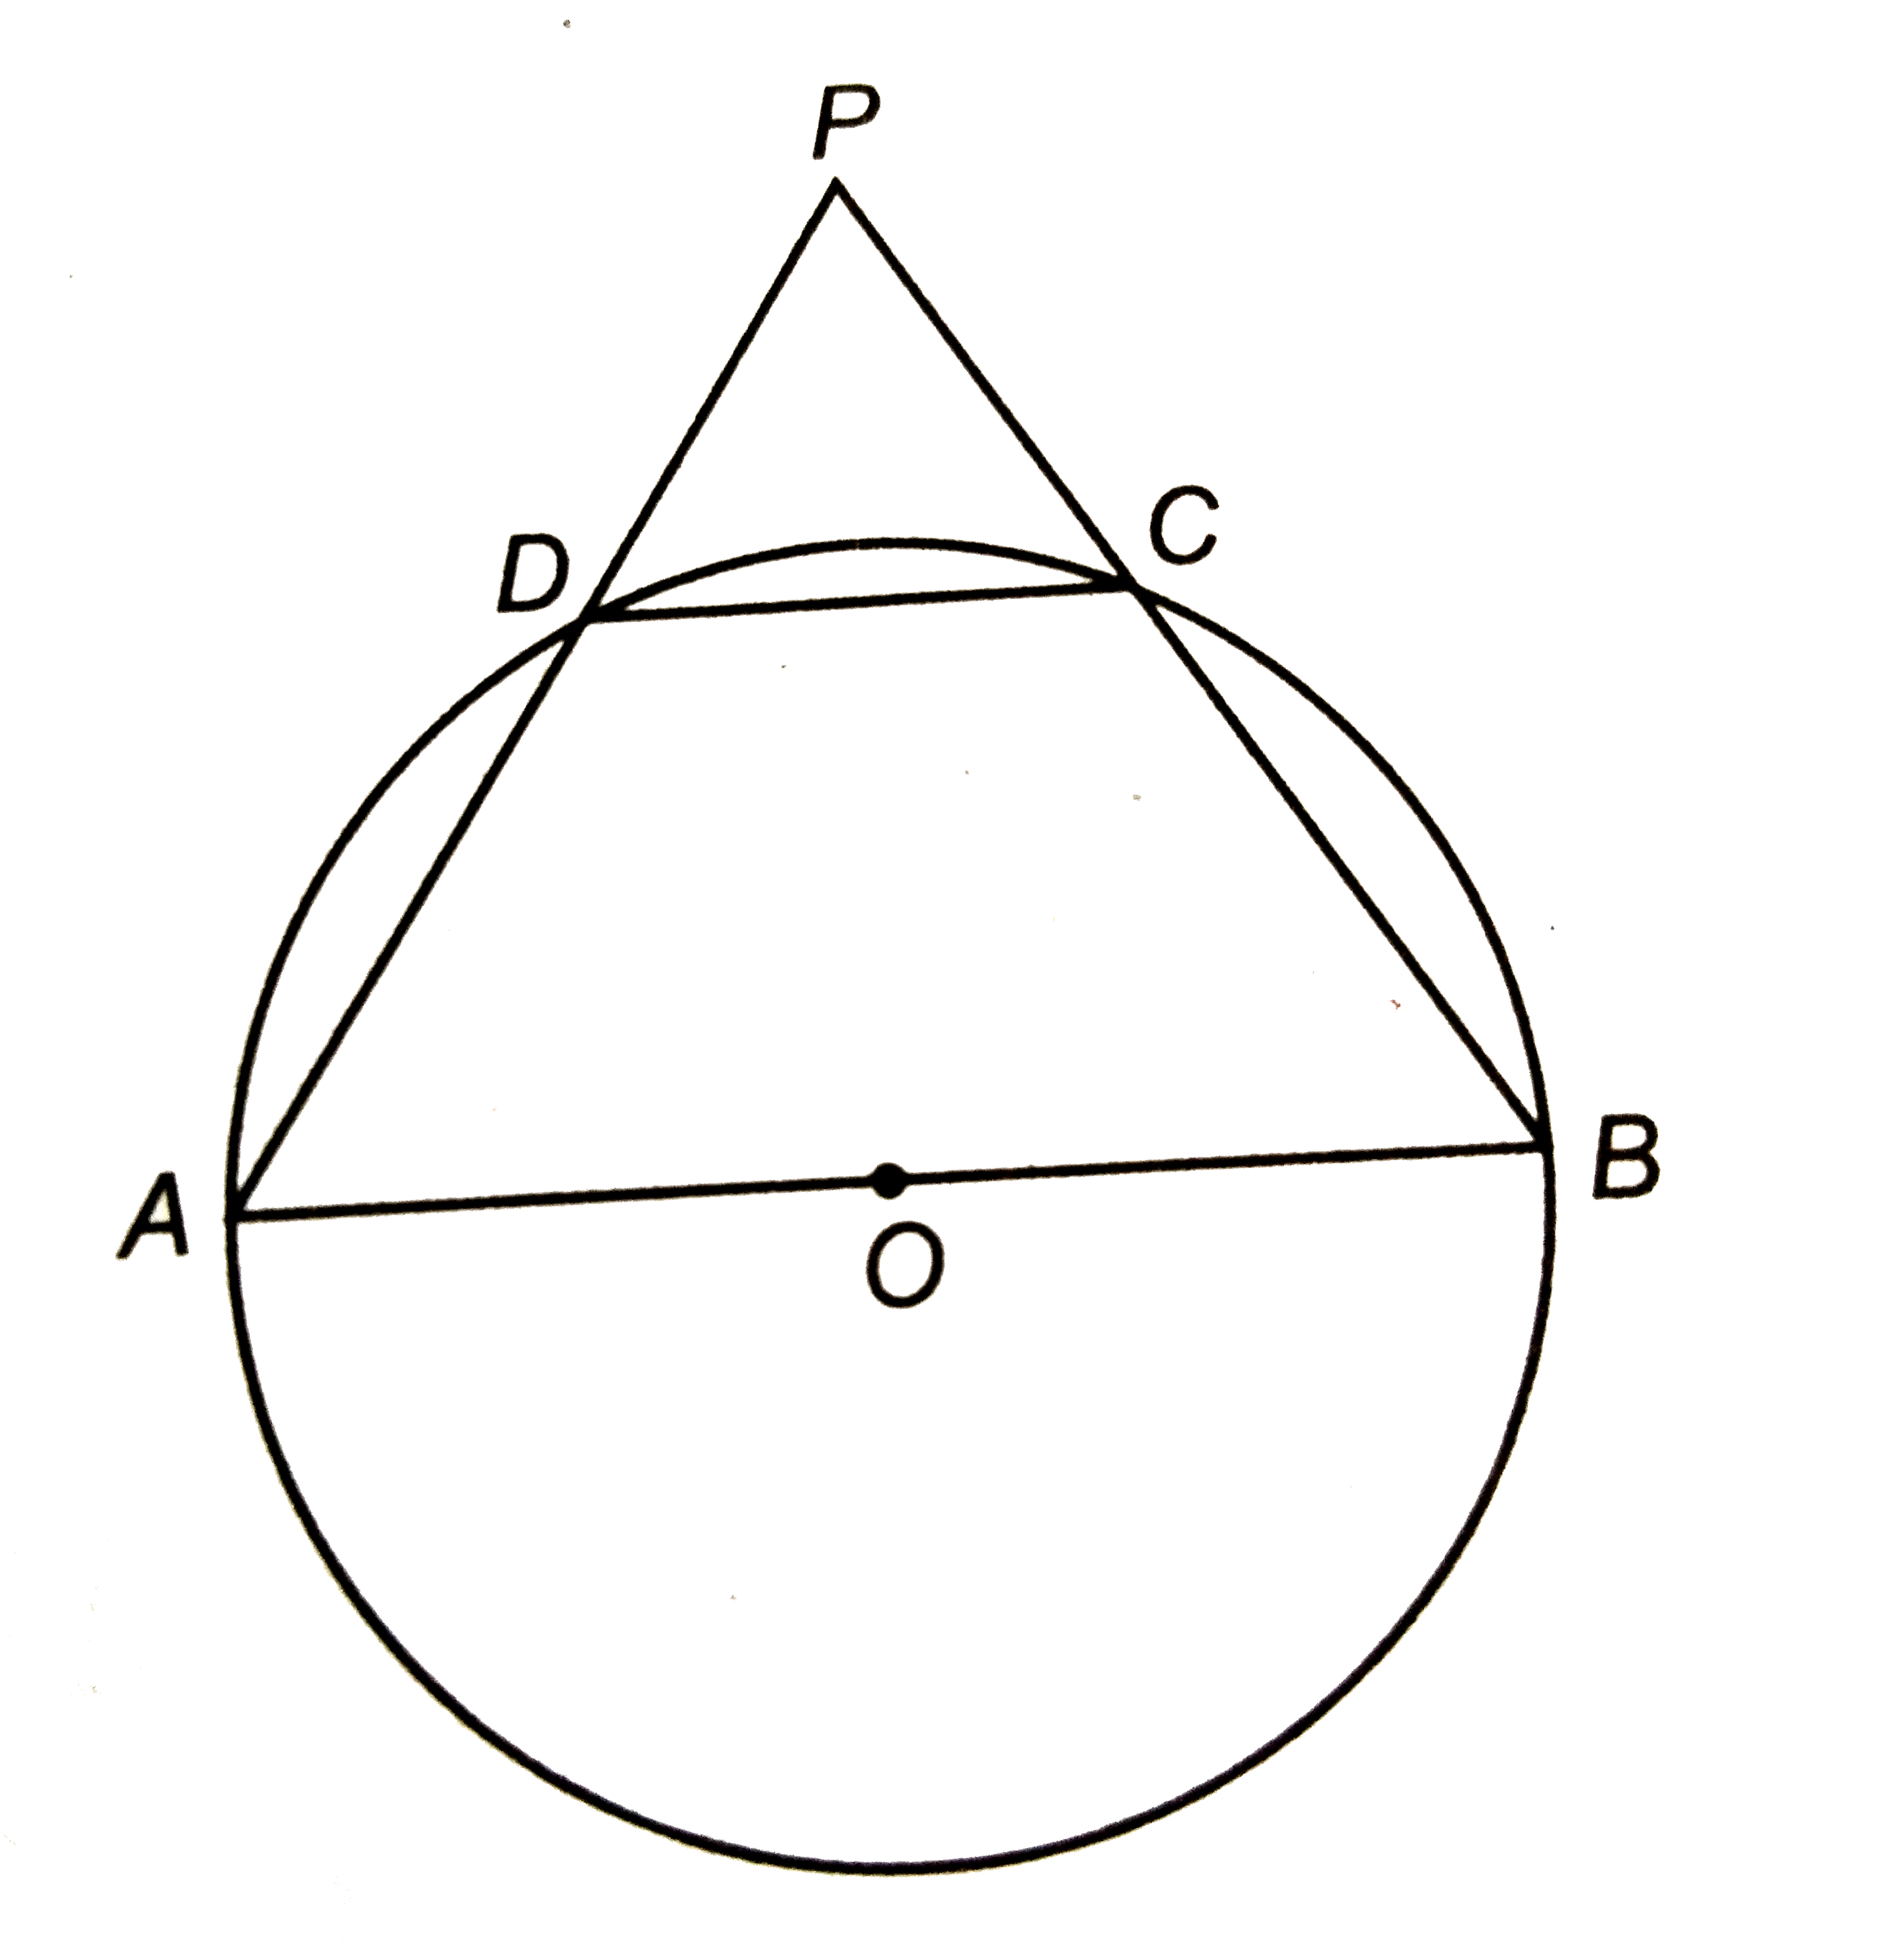 संलग्न चित्र में, 'O' केन्द्र के वृत्त का व्यास AB है | जीवा DC वृत्त की त्रिज्या के बराबर है | यदि P एक बाह्य बिन्दु है, तो angleAPB का मान ज्ञात कीजिए |